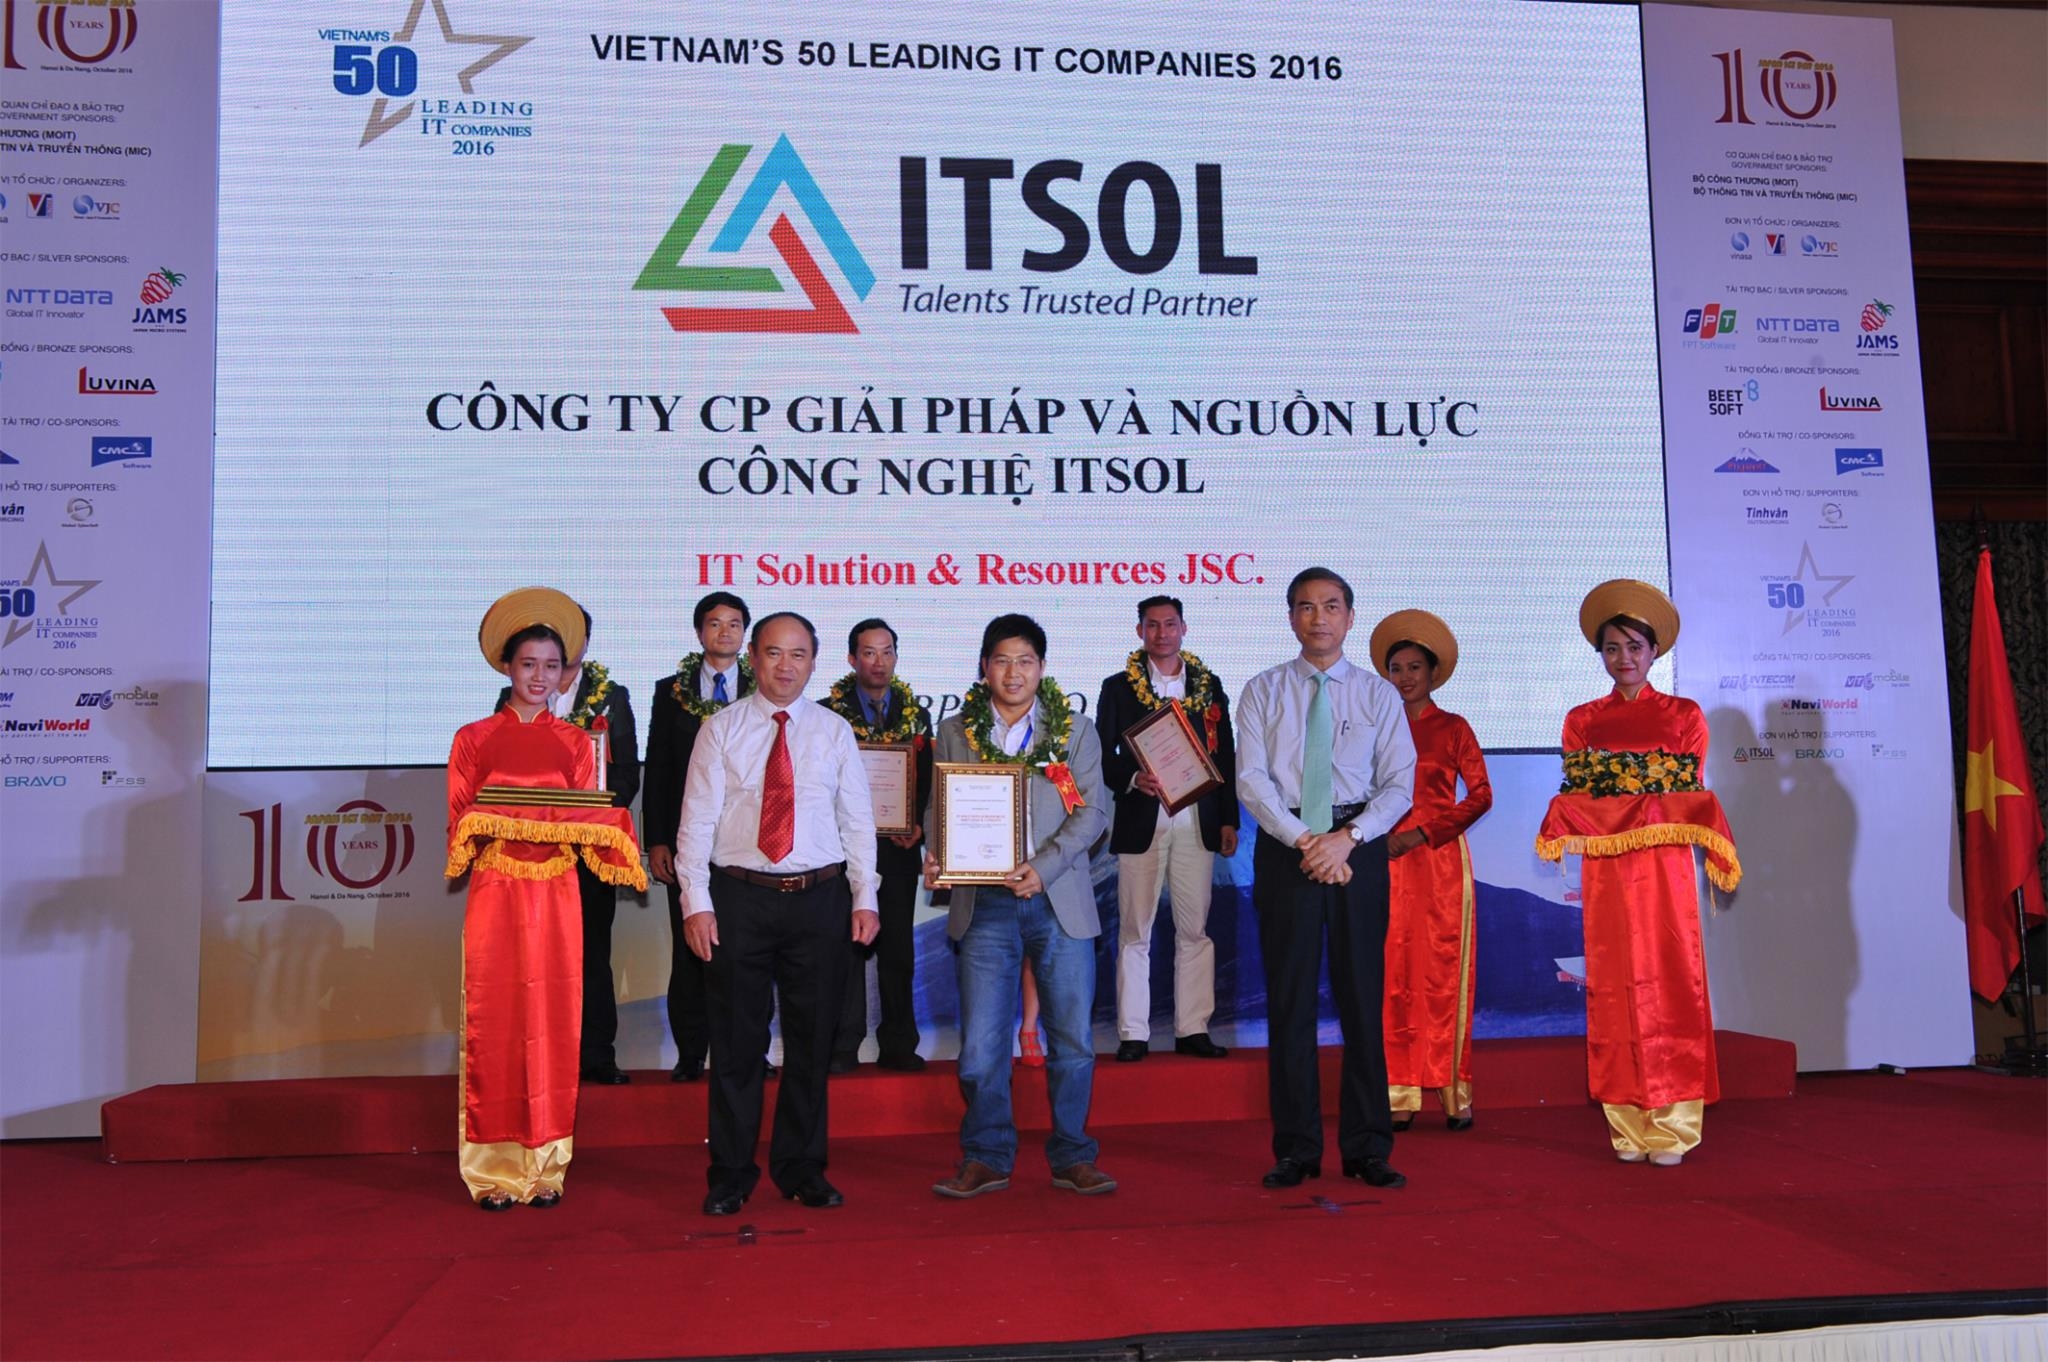 Chúc mừng cựu sinh viên Đỗ Chí Cường cùng công ty ITSOL lọt danh sách 50 doanh nghiệp công nghệ thông tin hàng đầu Việt Nam năm 2016